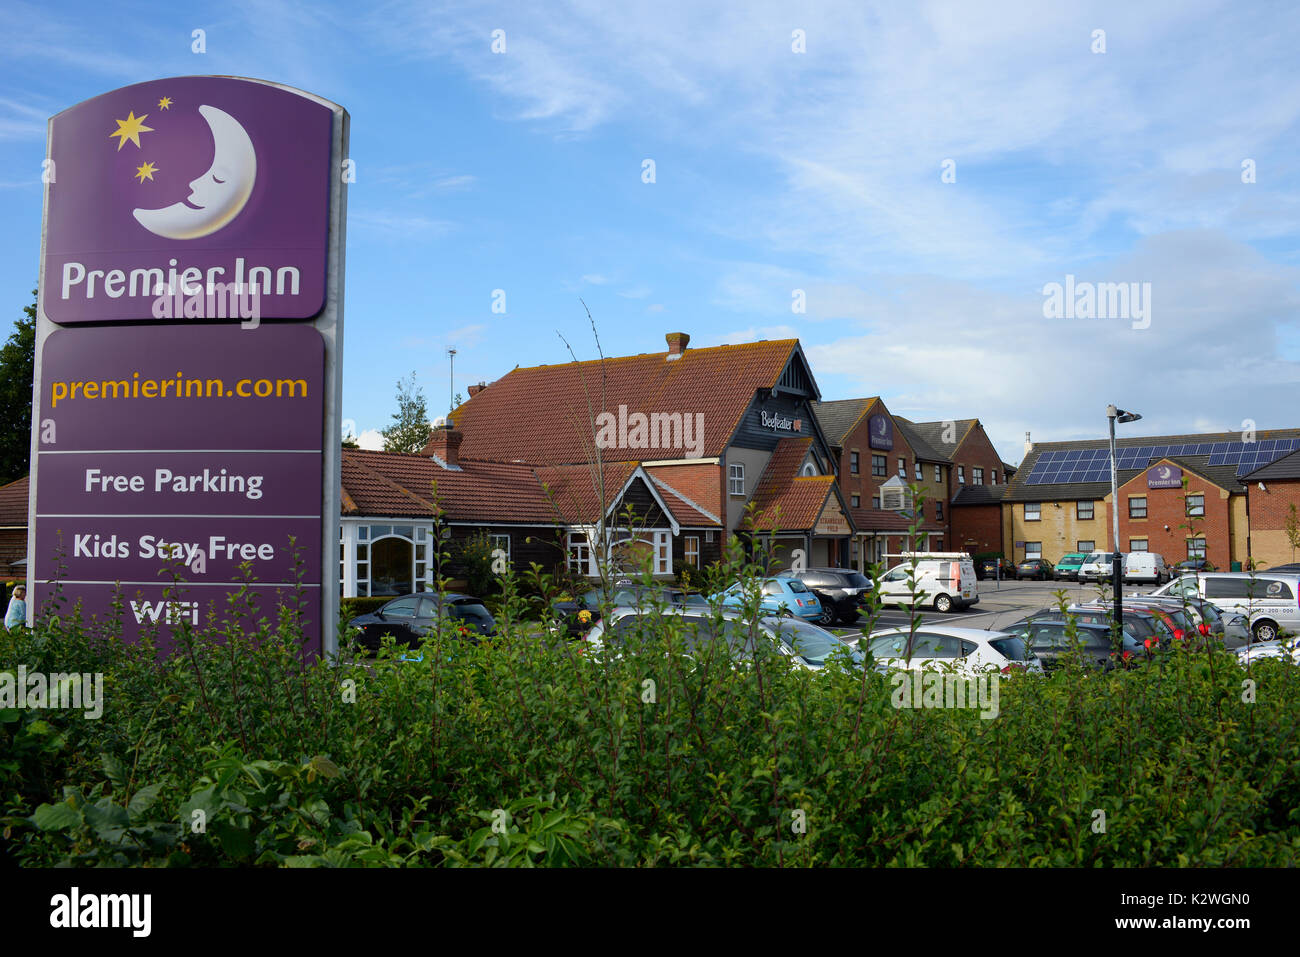 Premier Inn près de l'aéroport de Southend, Thanet Grange, Southend on Sea, Essex. Strawberry Field. Motel, hôtel et restaurant Beefeater Banque D'Images